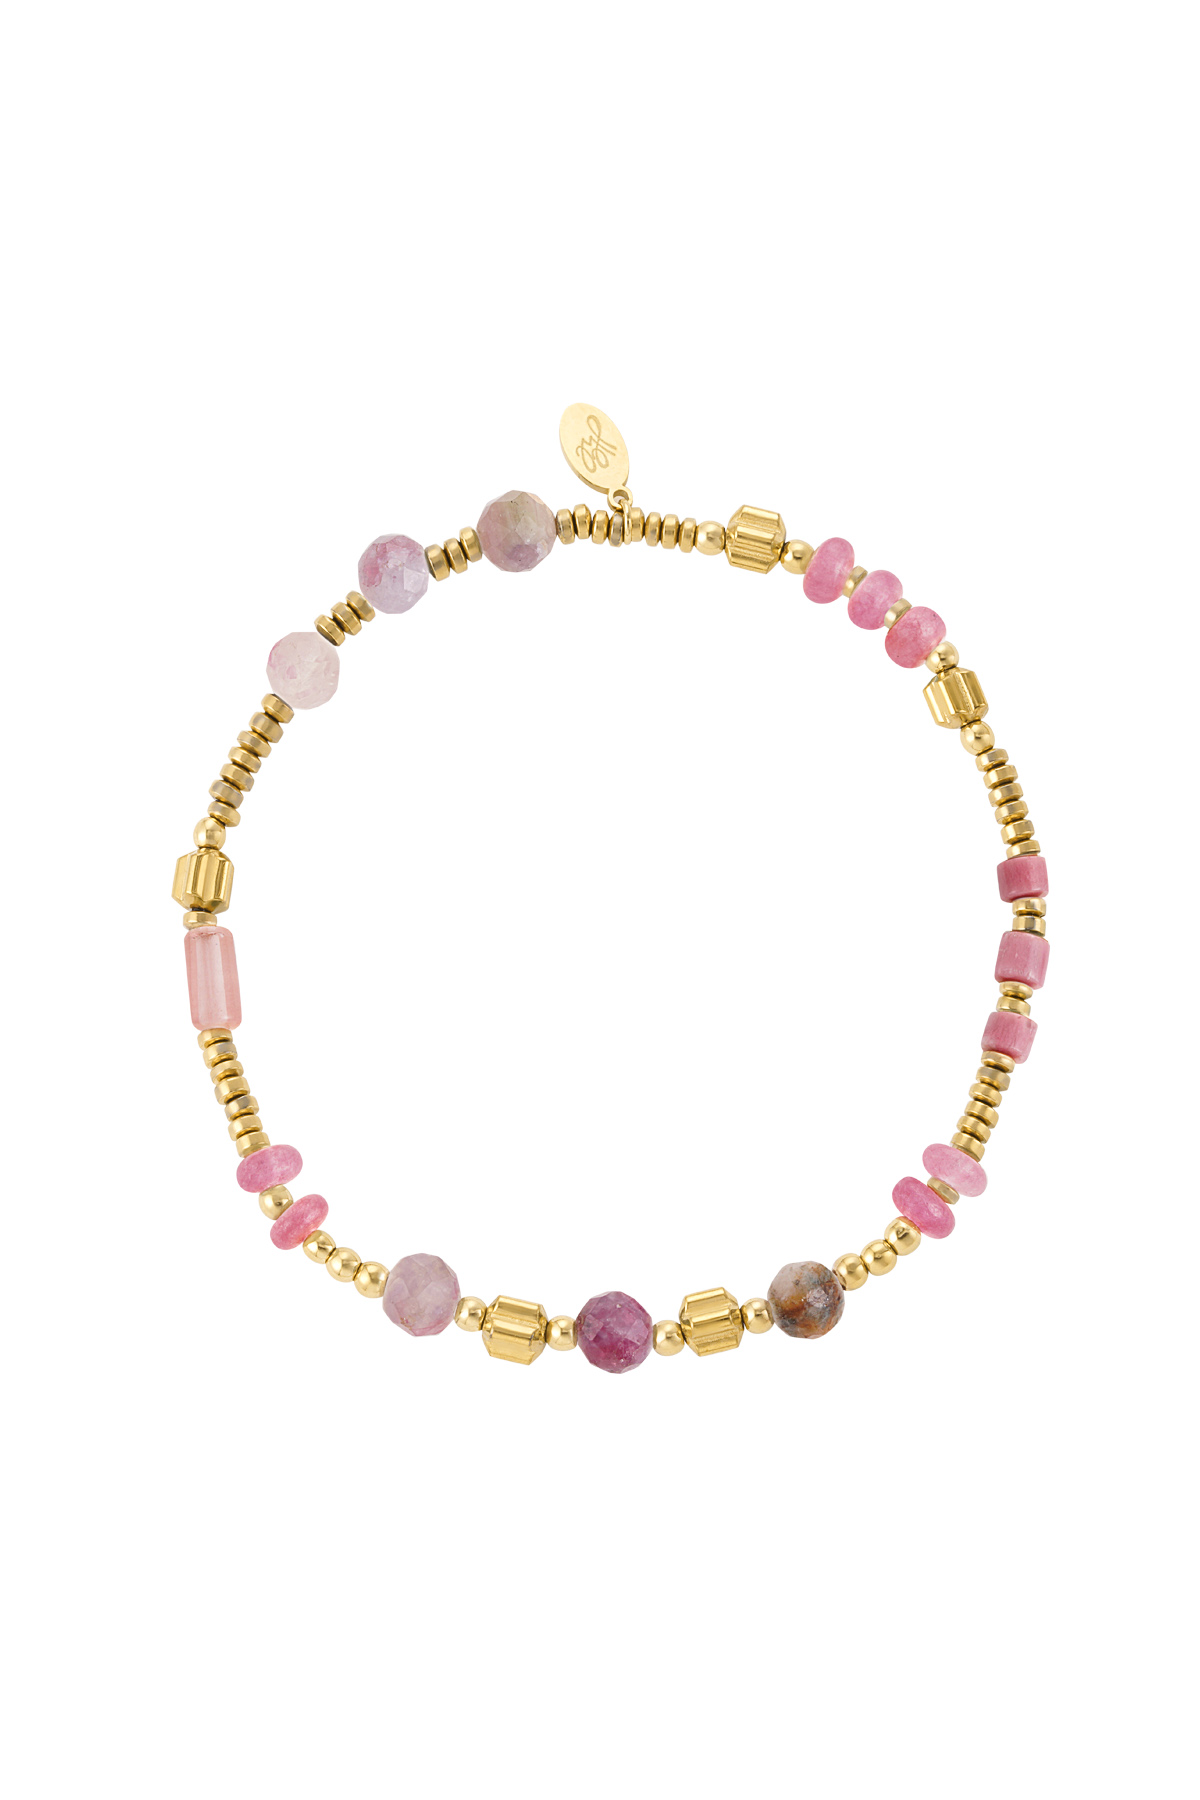 Armband aus Perlen und Steinen - rosafarbener und goldener Edelstahl